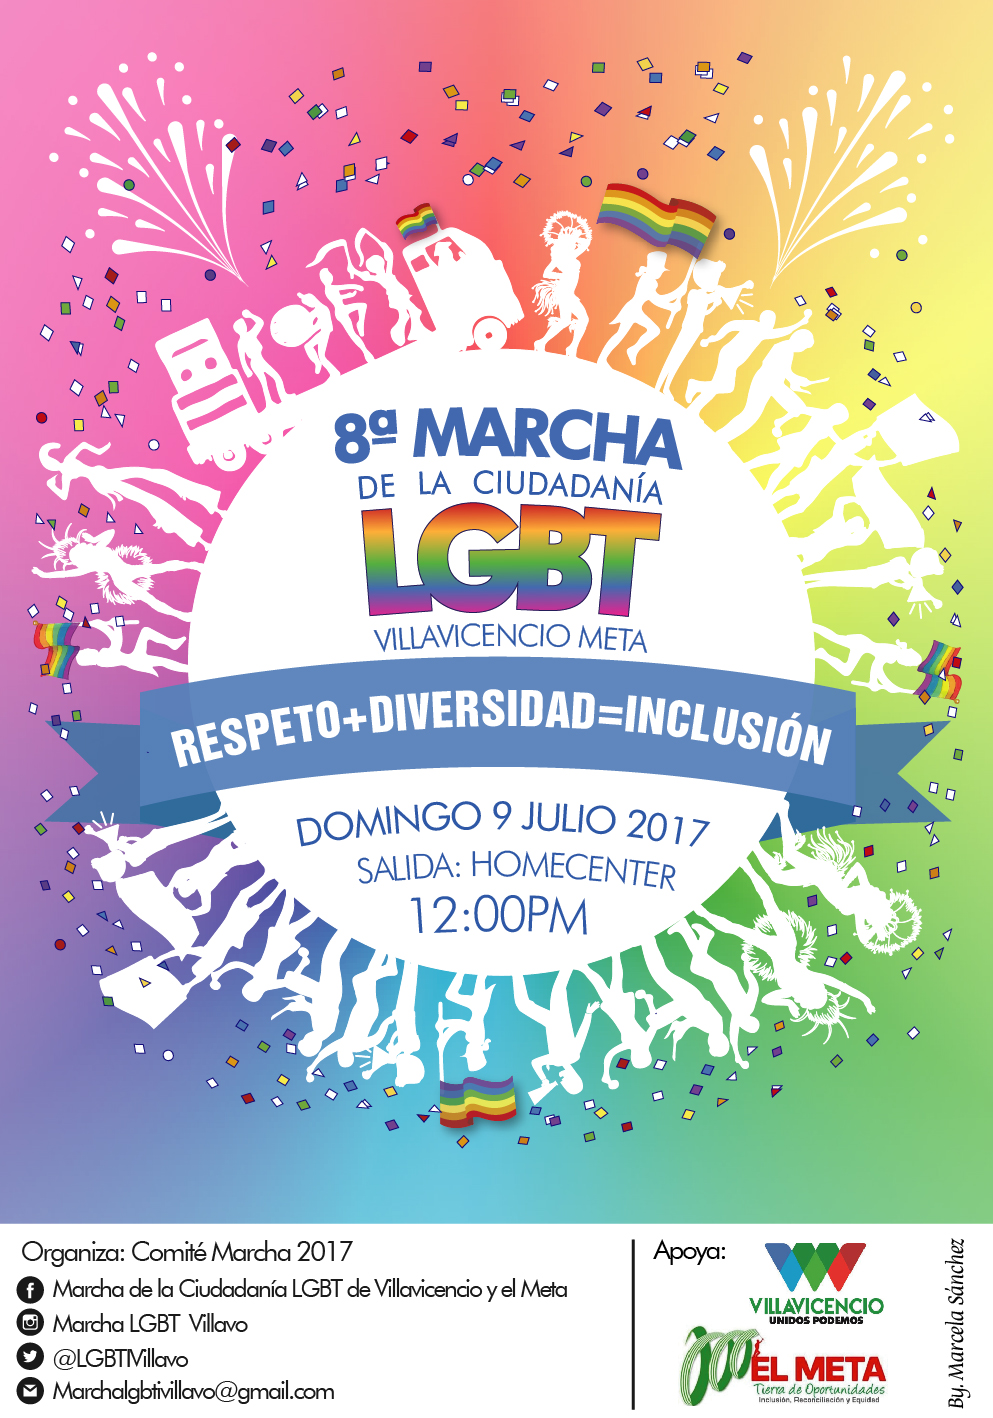  8 Marcha de la Ciudadana LGBTI Villavicencio 2017 [VILLAVICENCIO] 